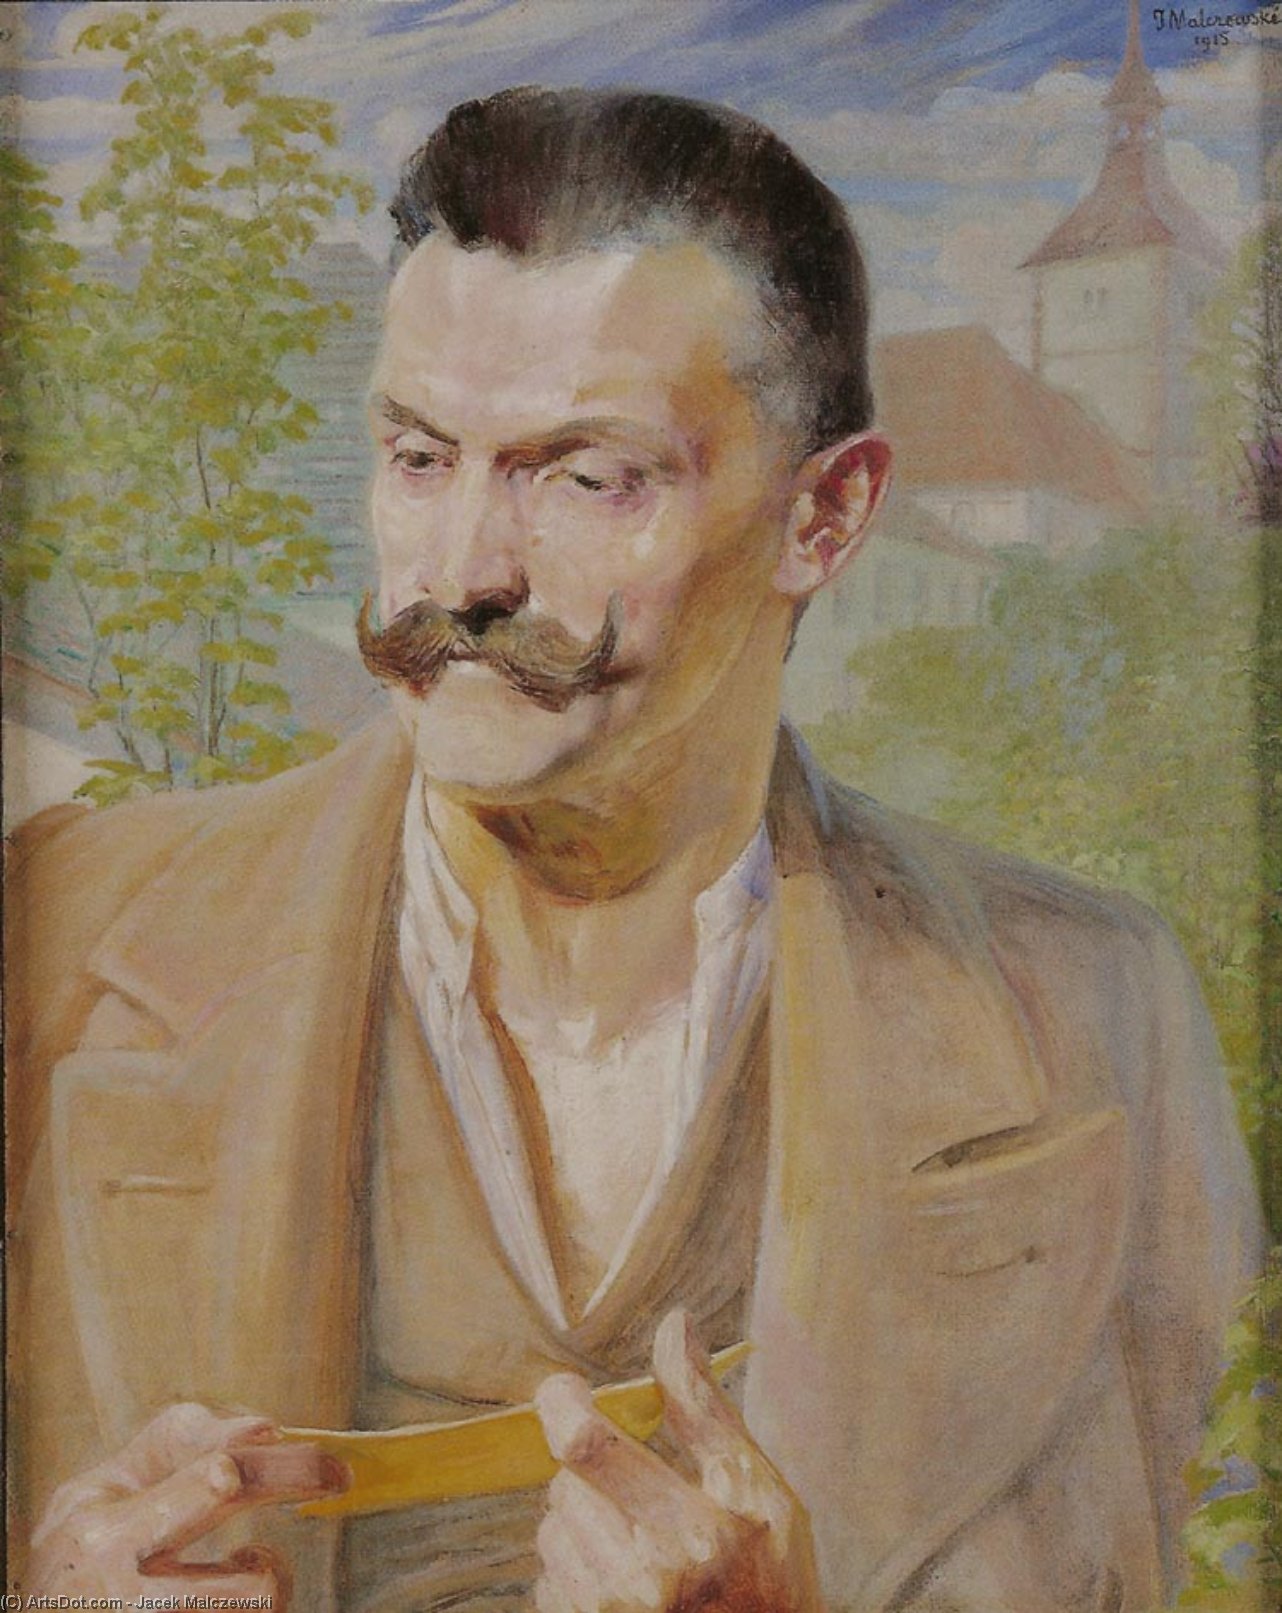 WikiOO.org - Εγκυκλοπαίδεια Καλών Τεχνών - Ζωγραφική, έργα τέχνης Jacek Malczewski - Sketch for the Portrait of a Man